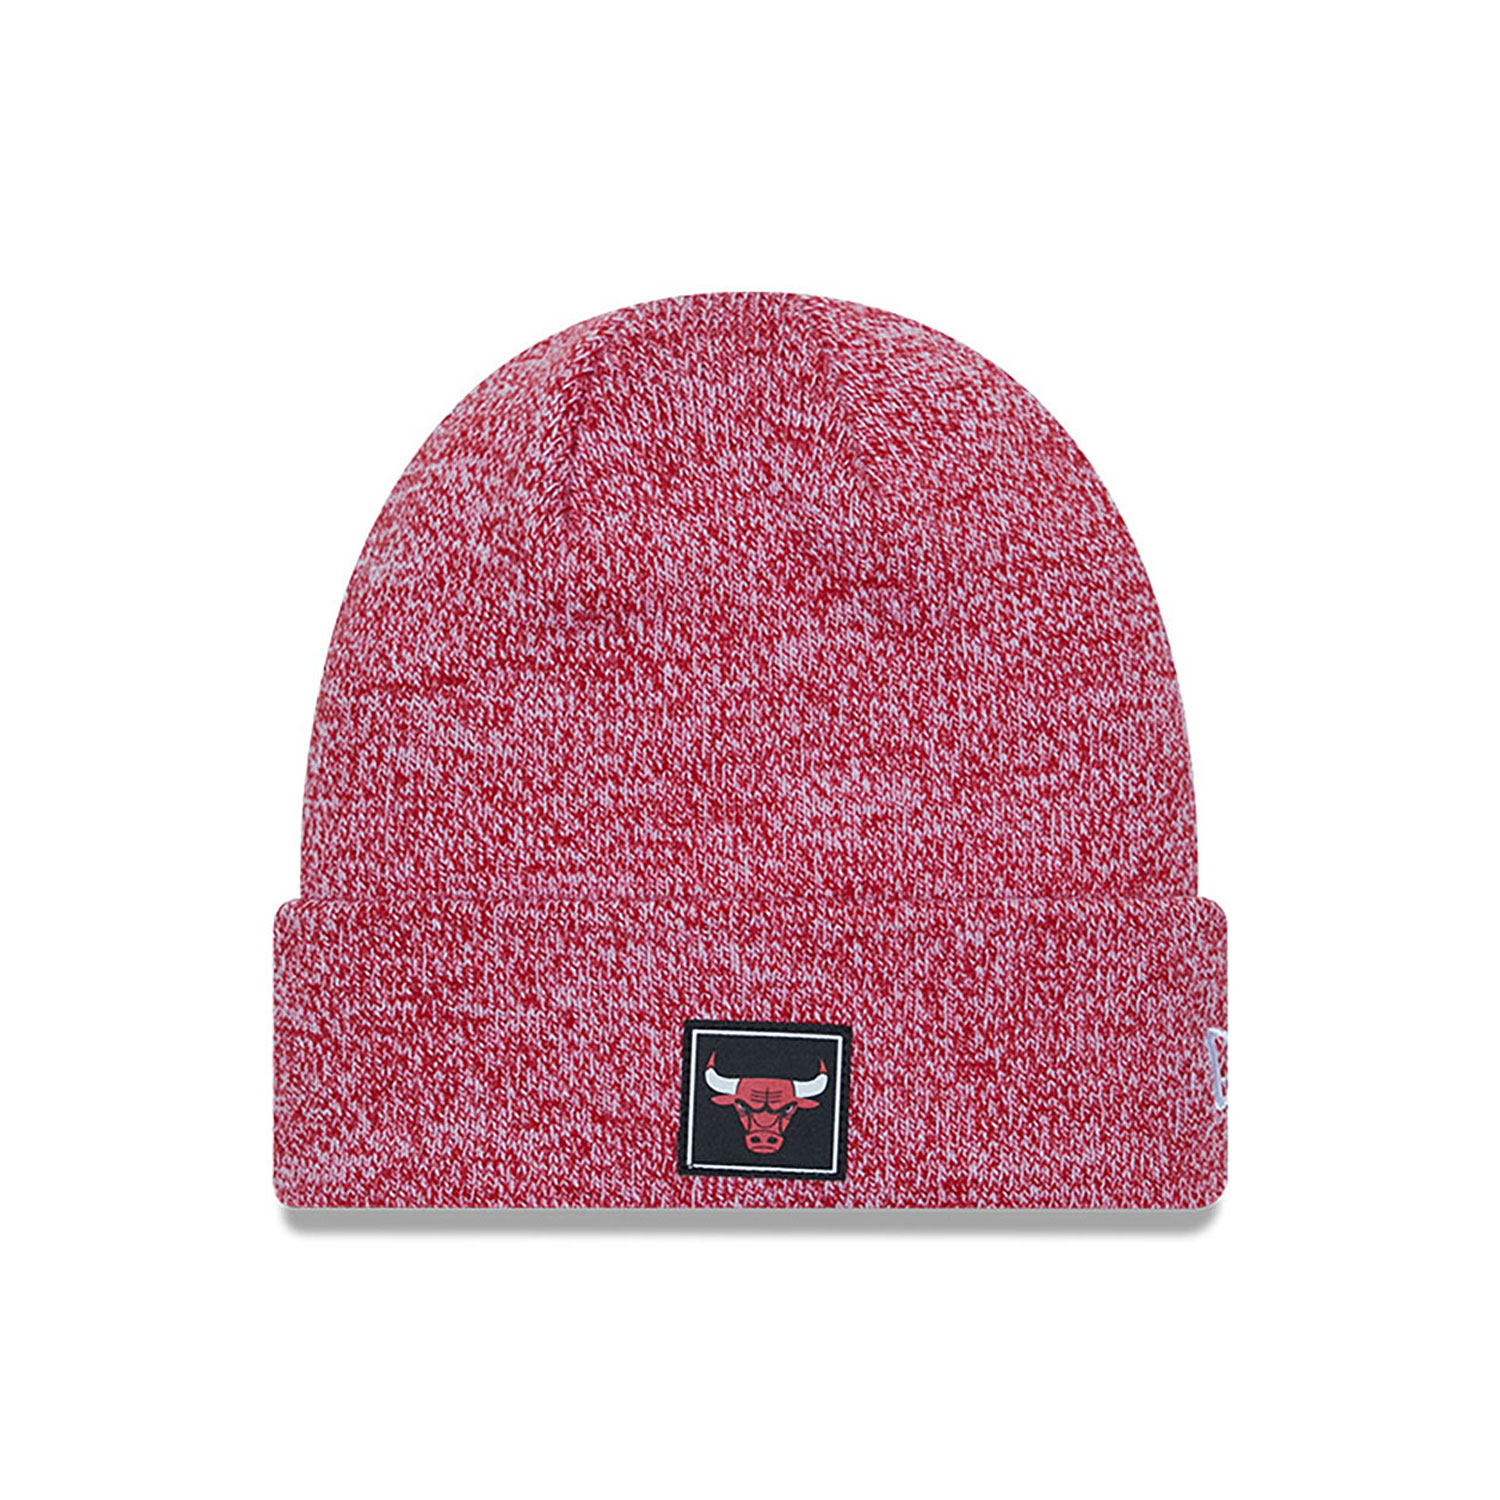 Chicago Bulls Team Red Cuff Knit Beanie Hat